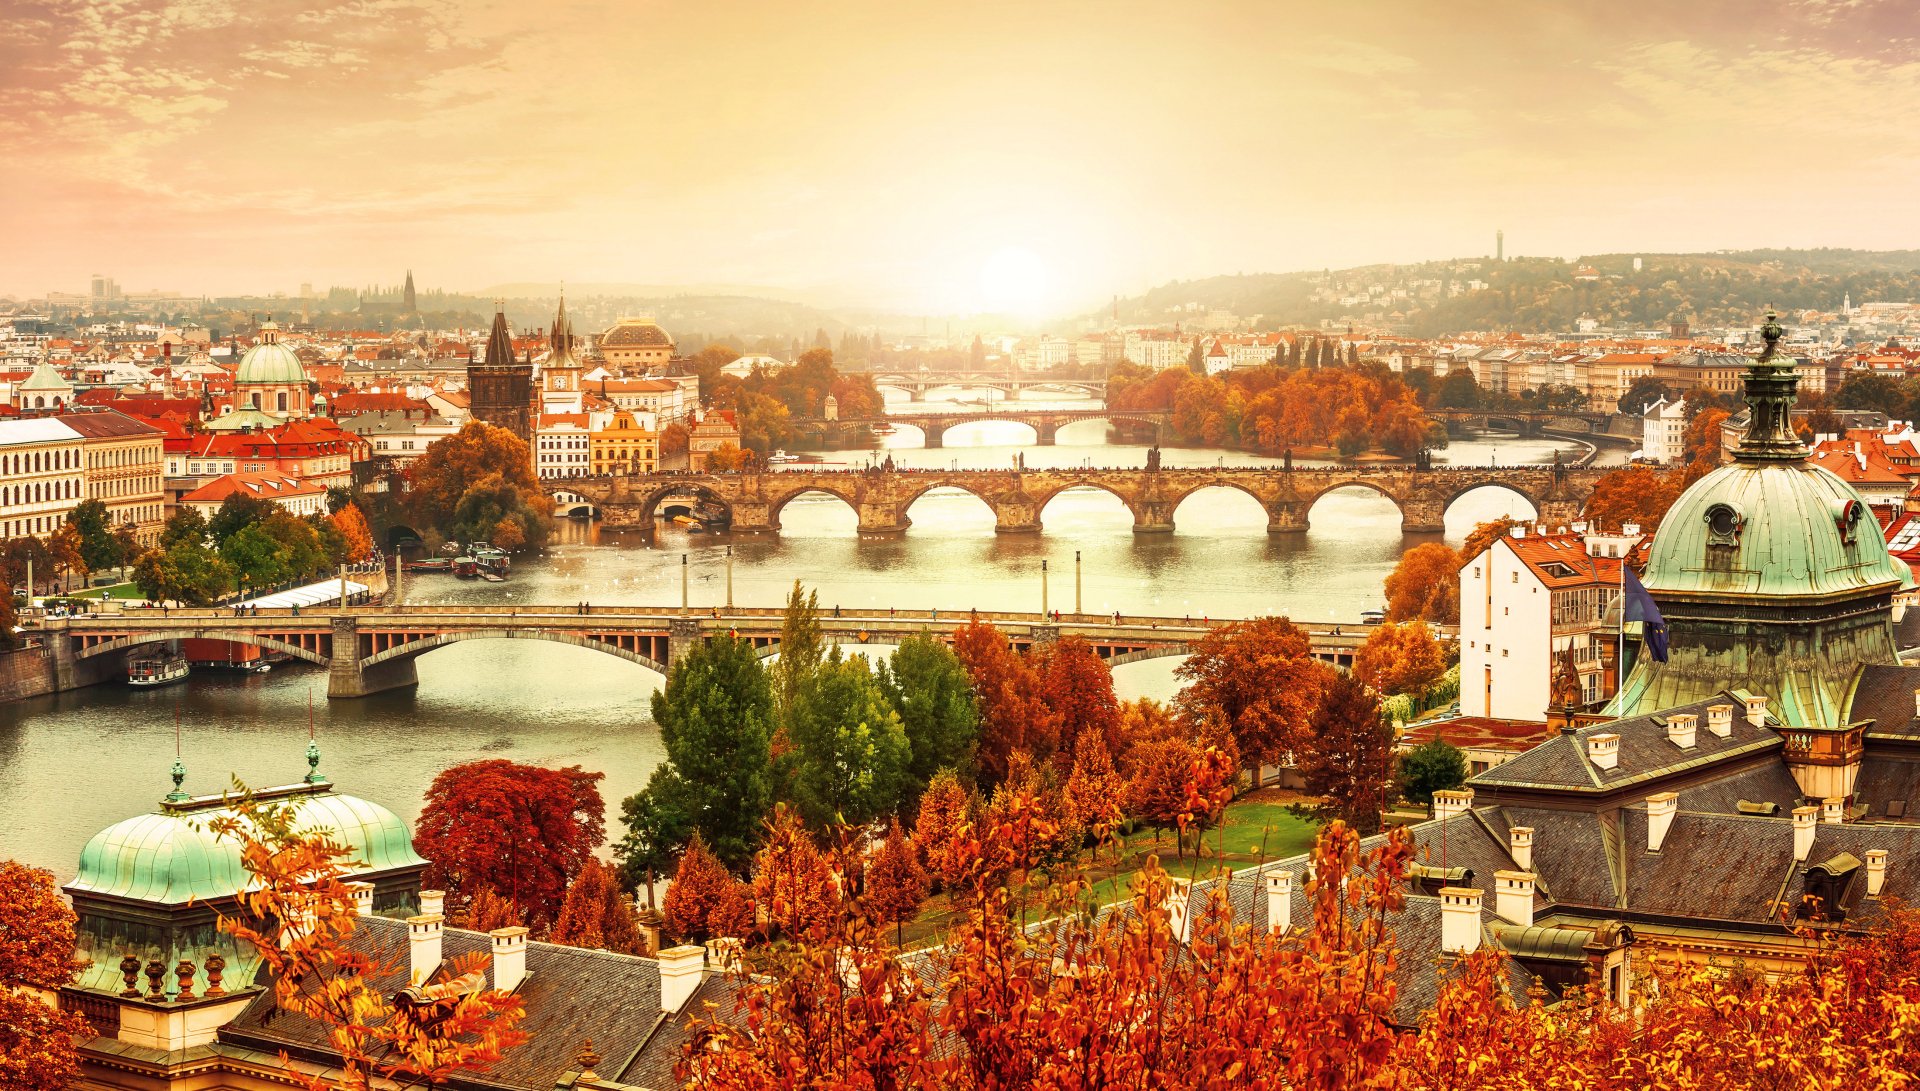 Download Czech Republic City House Fall Bridge Cityscape Man Made Prague  4k Ultra HD Wallpaper